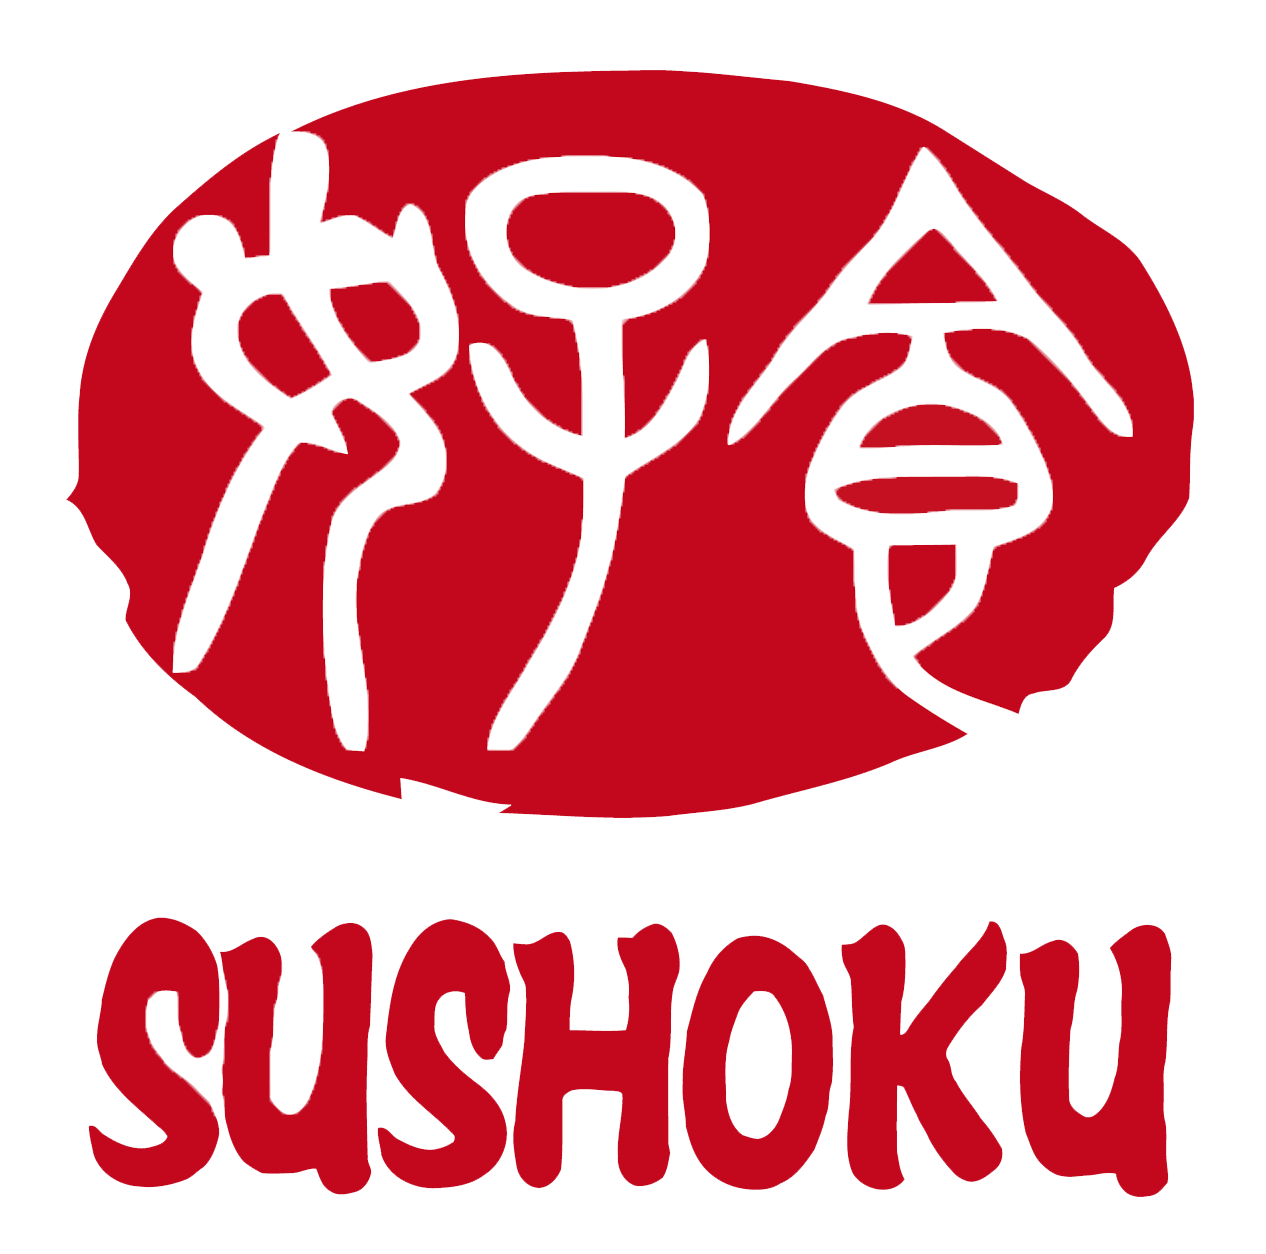 Sushoku